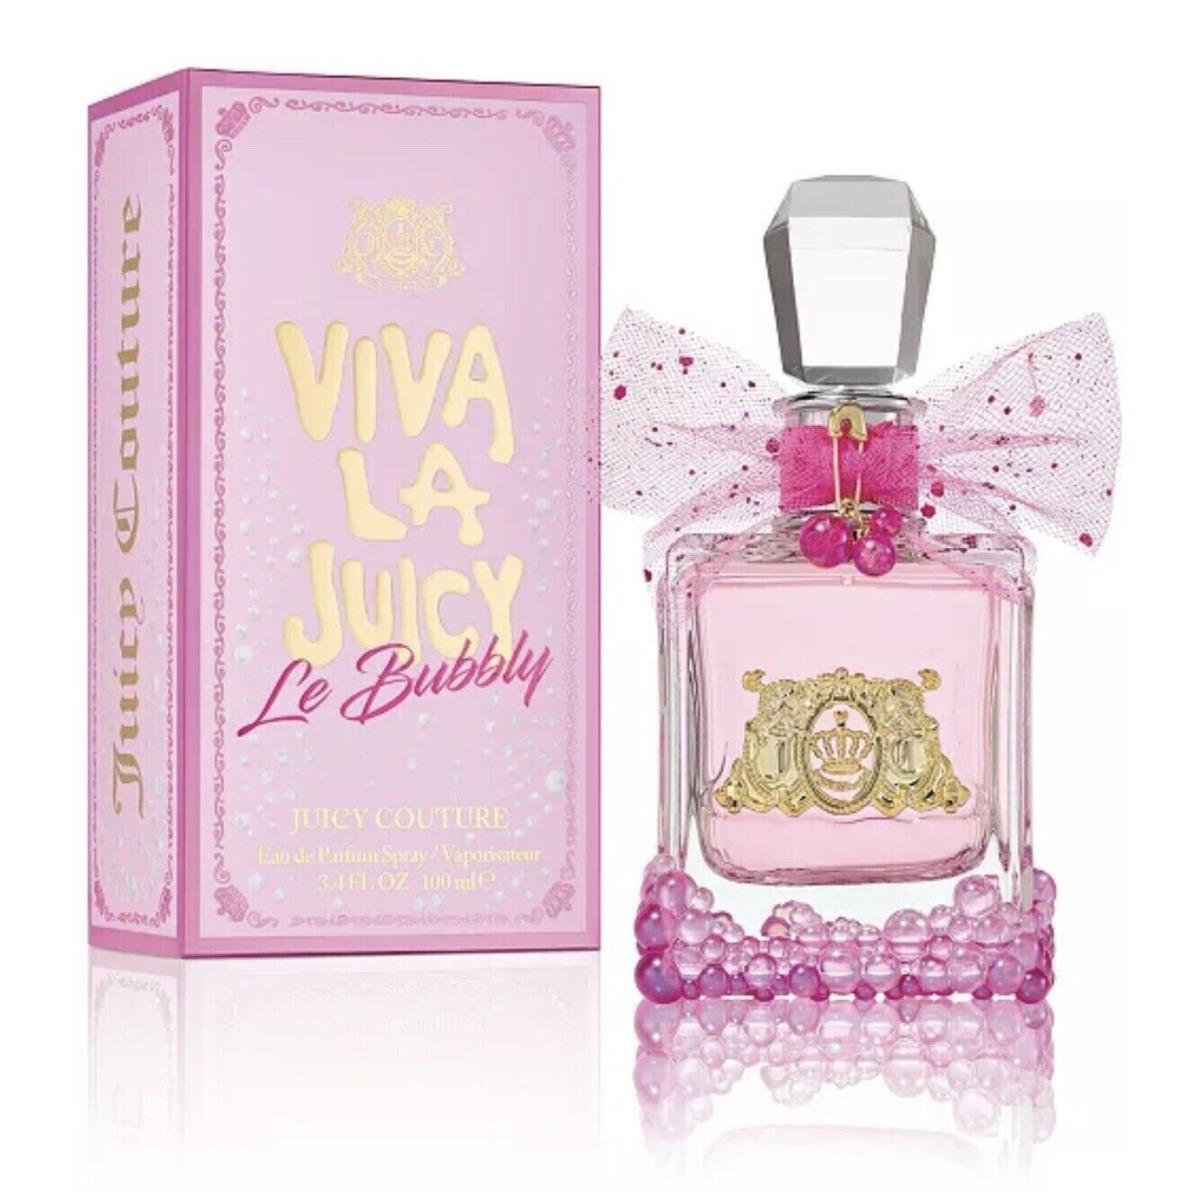 Viva la Juicy Le Bubbly Eau de Parfum Spray 3.4 oz / 100ml